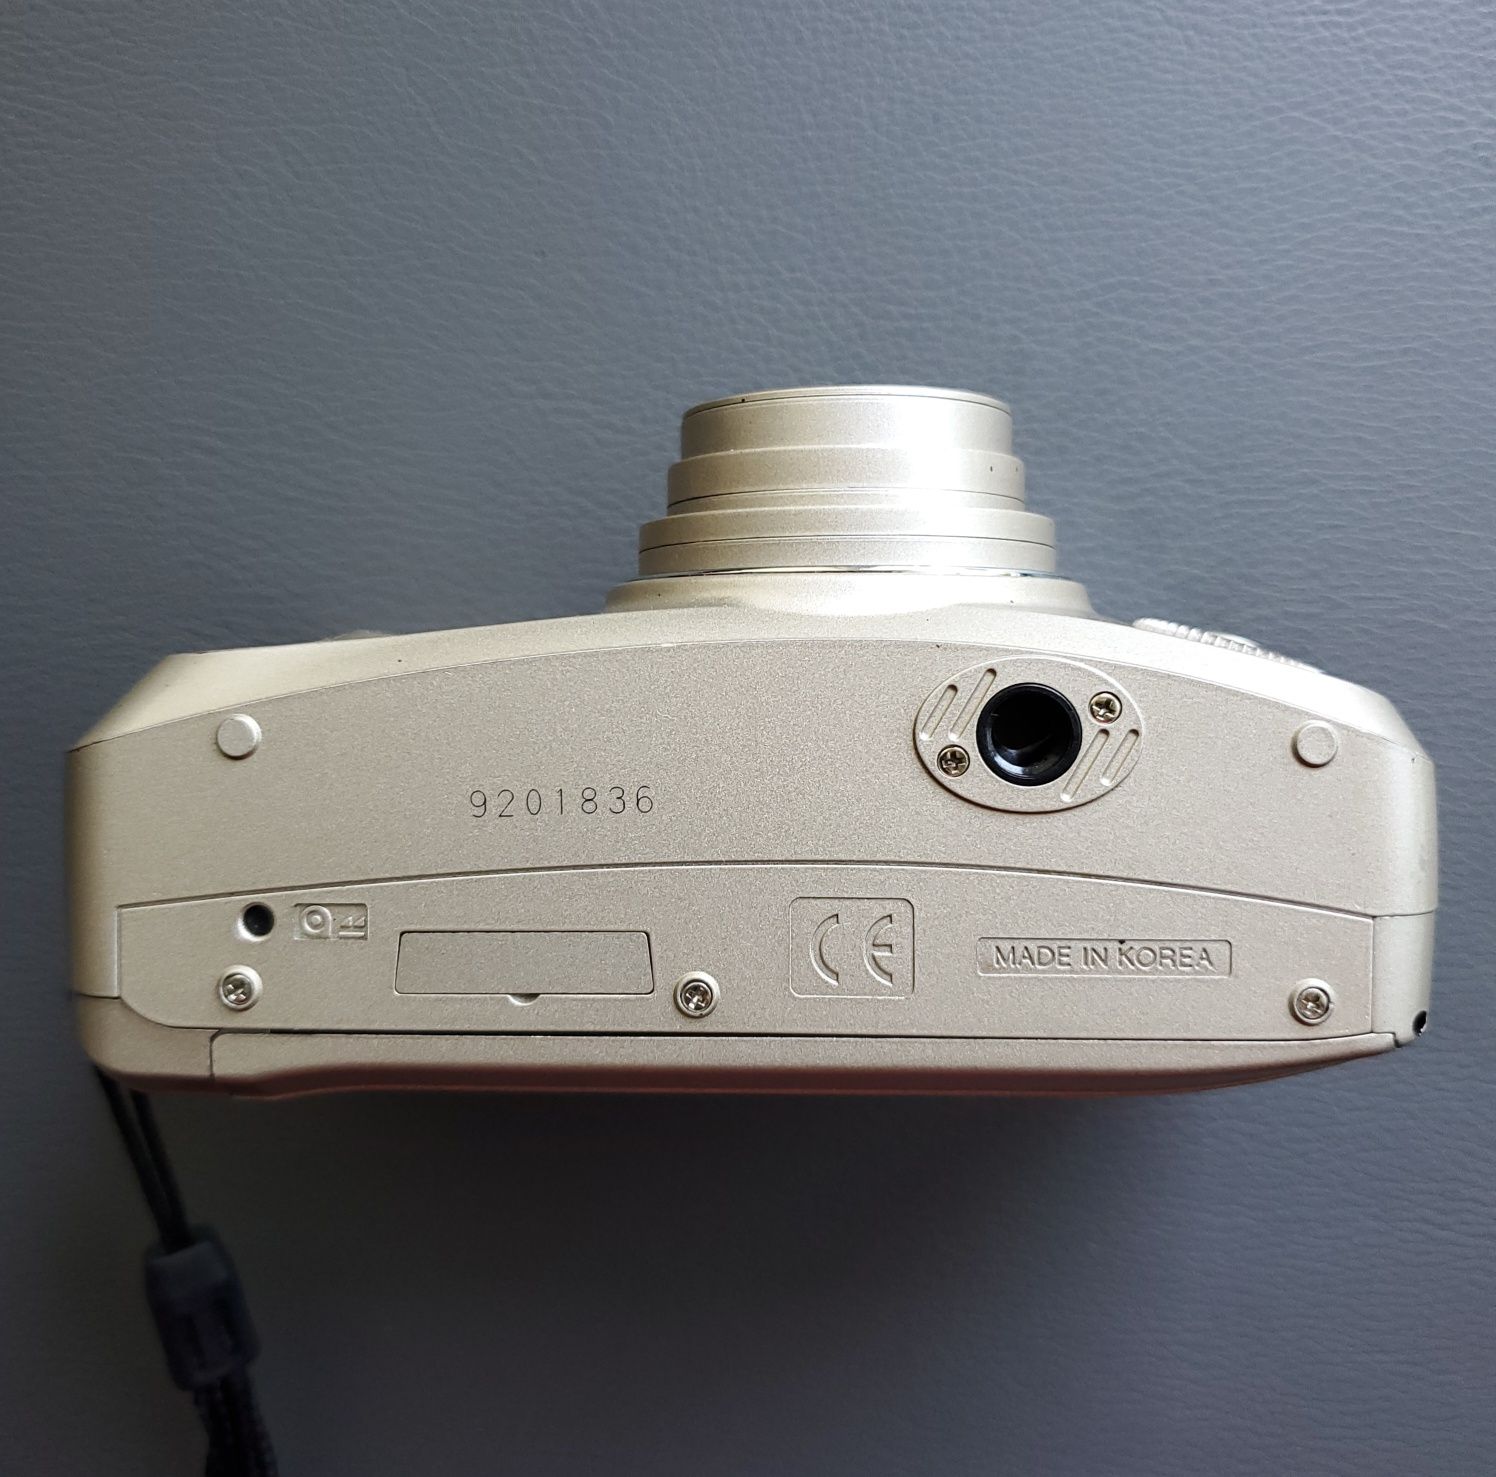 Пленочный премиум-компакт фотоаппарат Samsung Evoca 140s тестирован